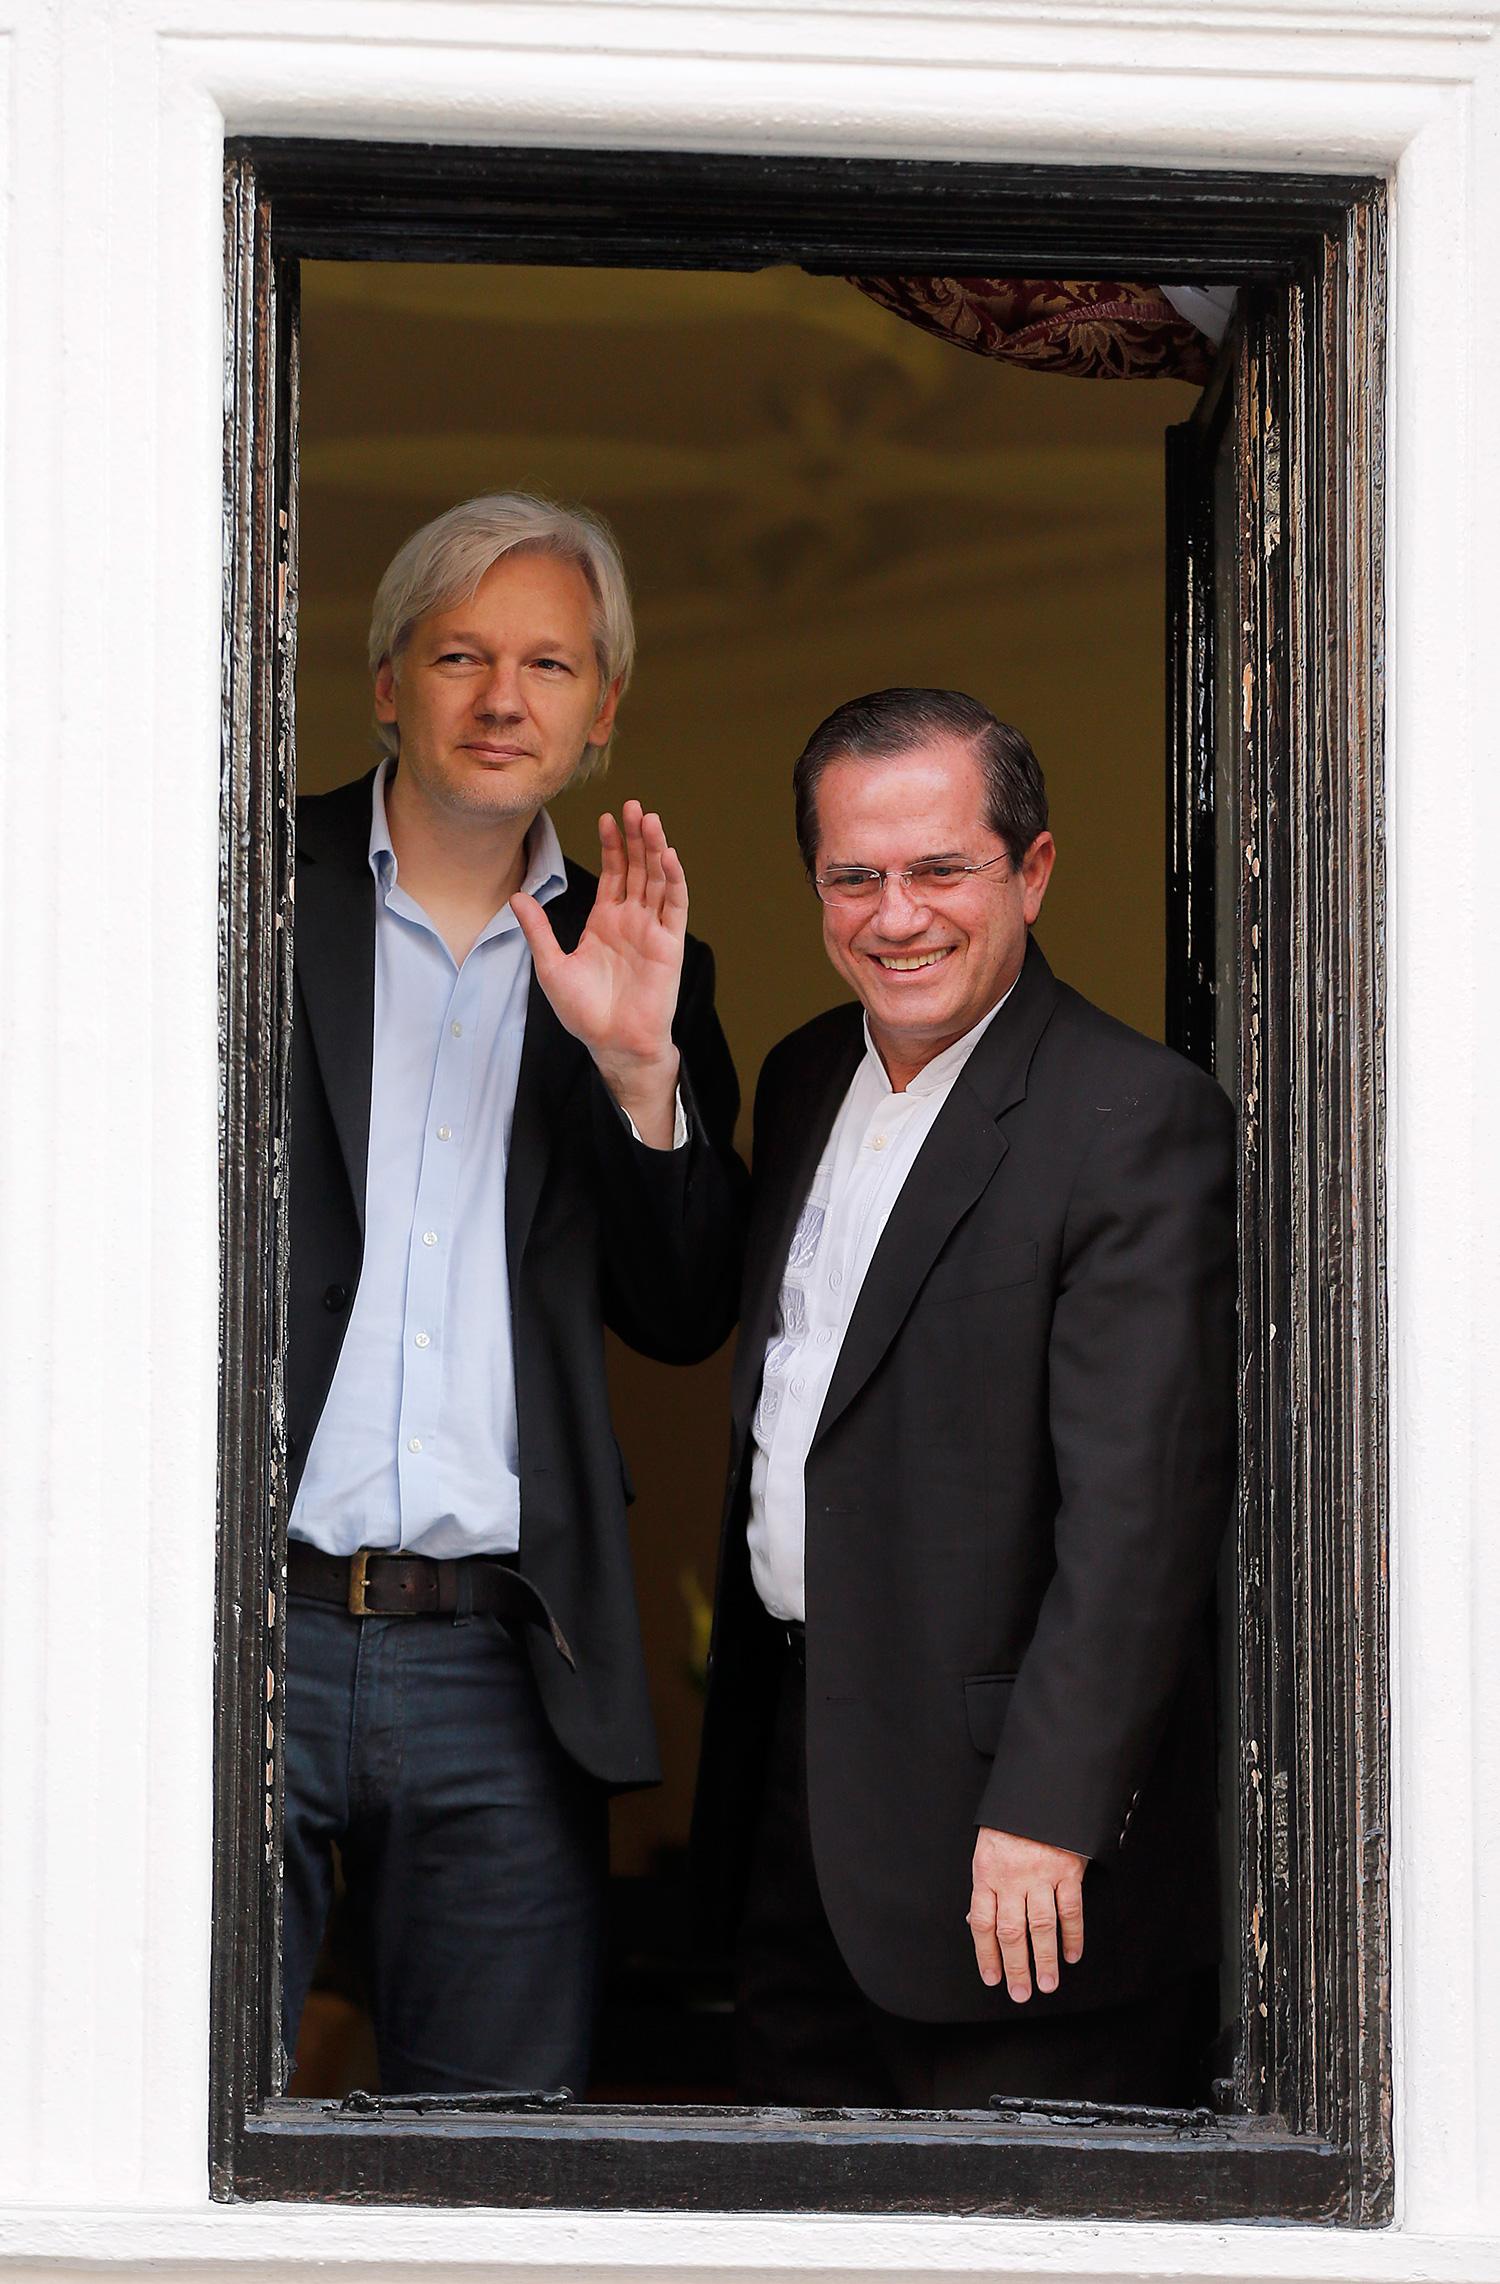 En annan vän av ambassader är Julian Assange, som sedan 19 juni 2012 är inneboende på Ecuadors ambassad. Här bredvid landets utrikesminister Ricardo Patiño.